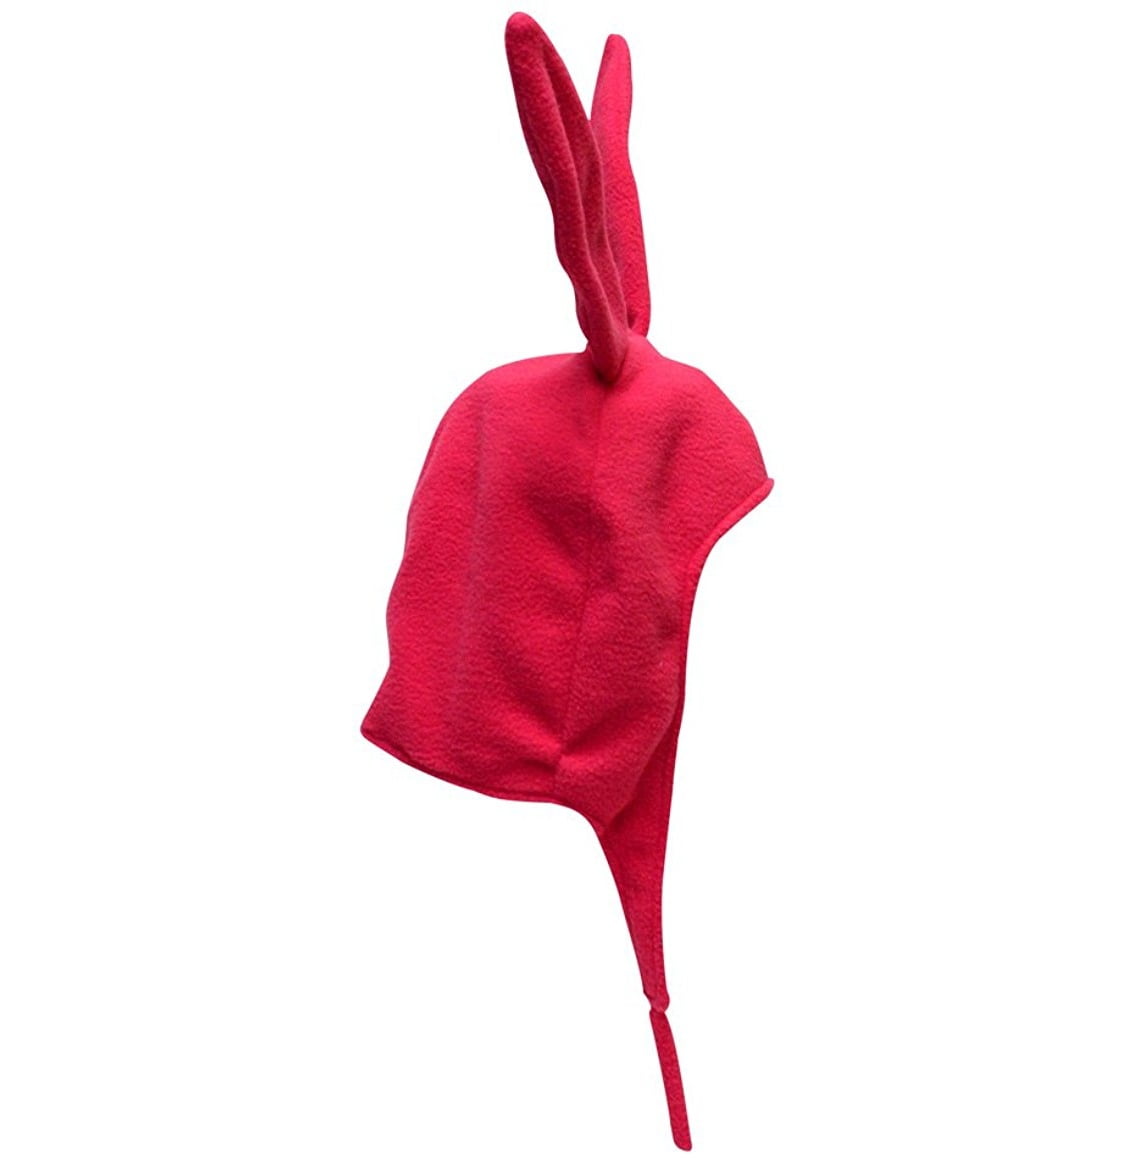 Bob's Burgers Louise Belcher Bunny Ears hat Pink bunny ears hat